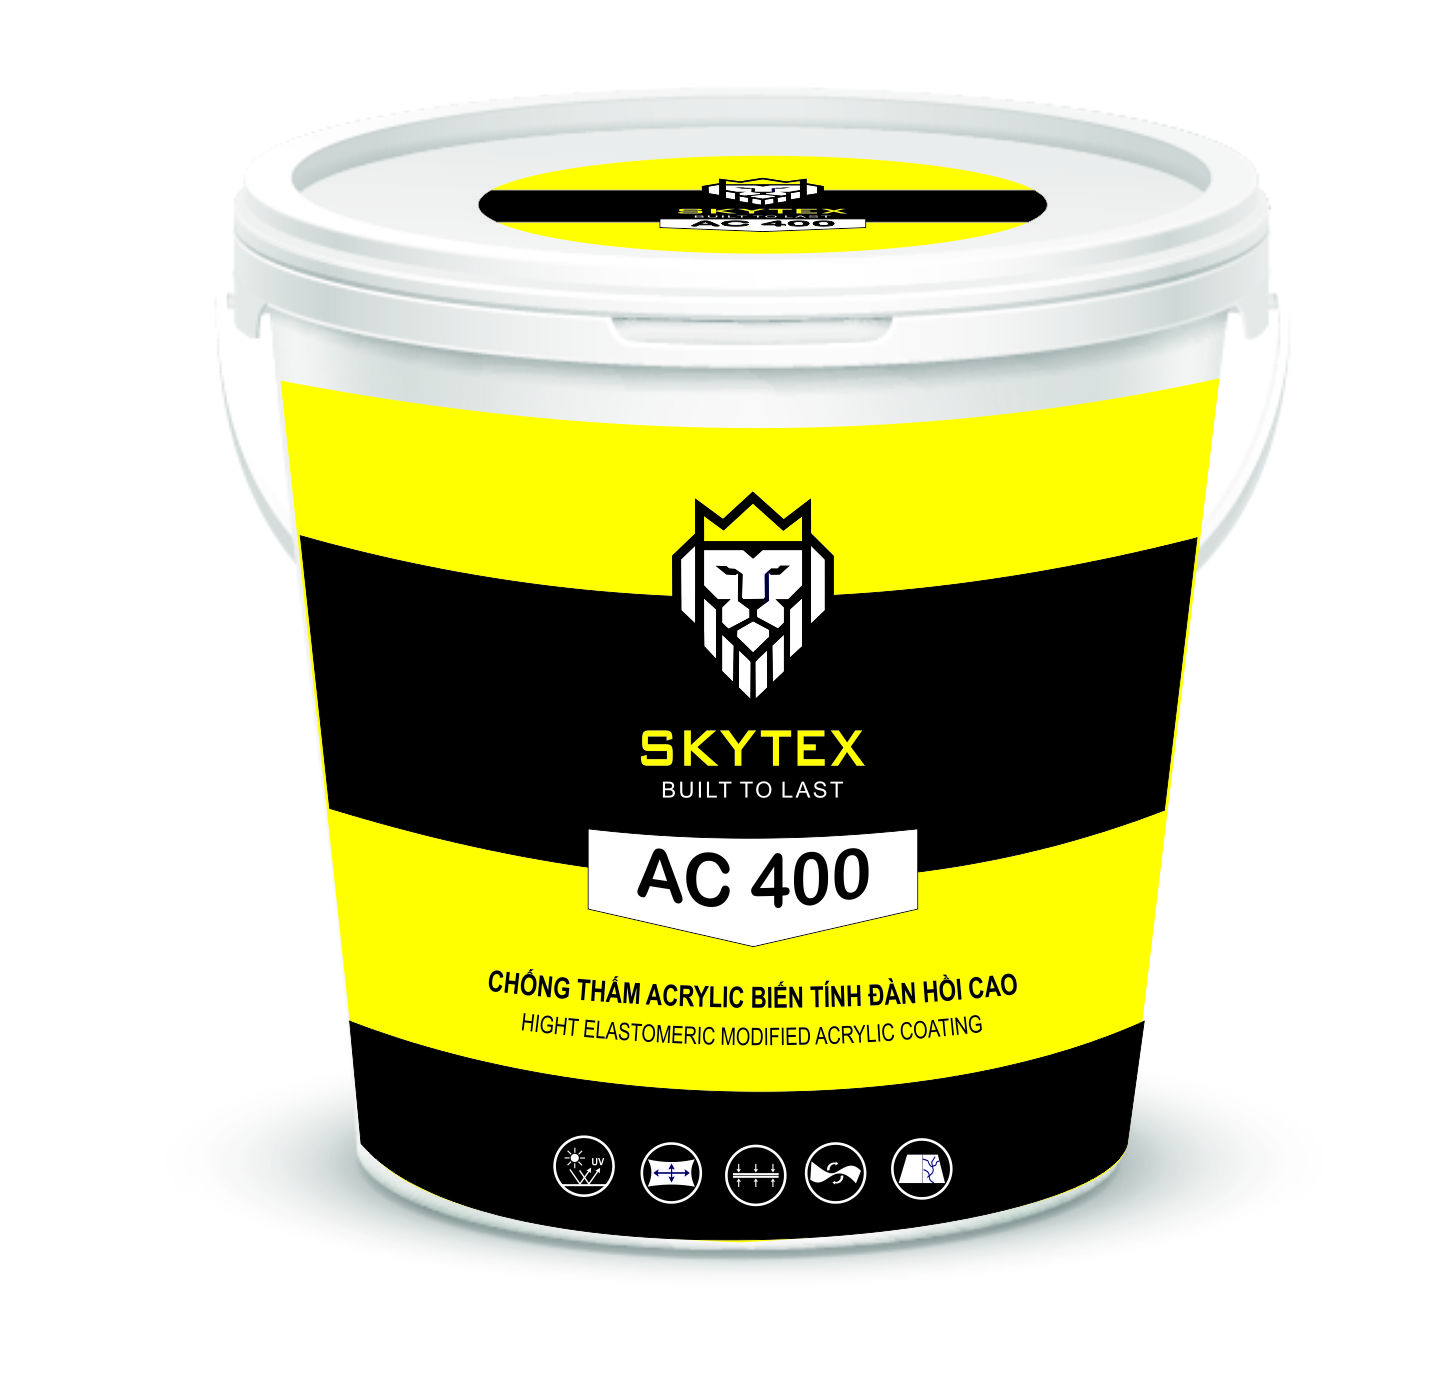 Thông tin sản phẩm sơn chống thấm ac 400 độ bền cao